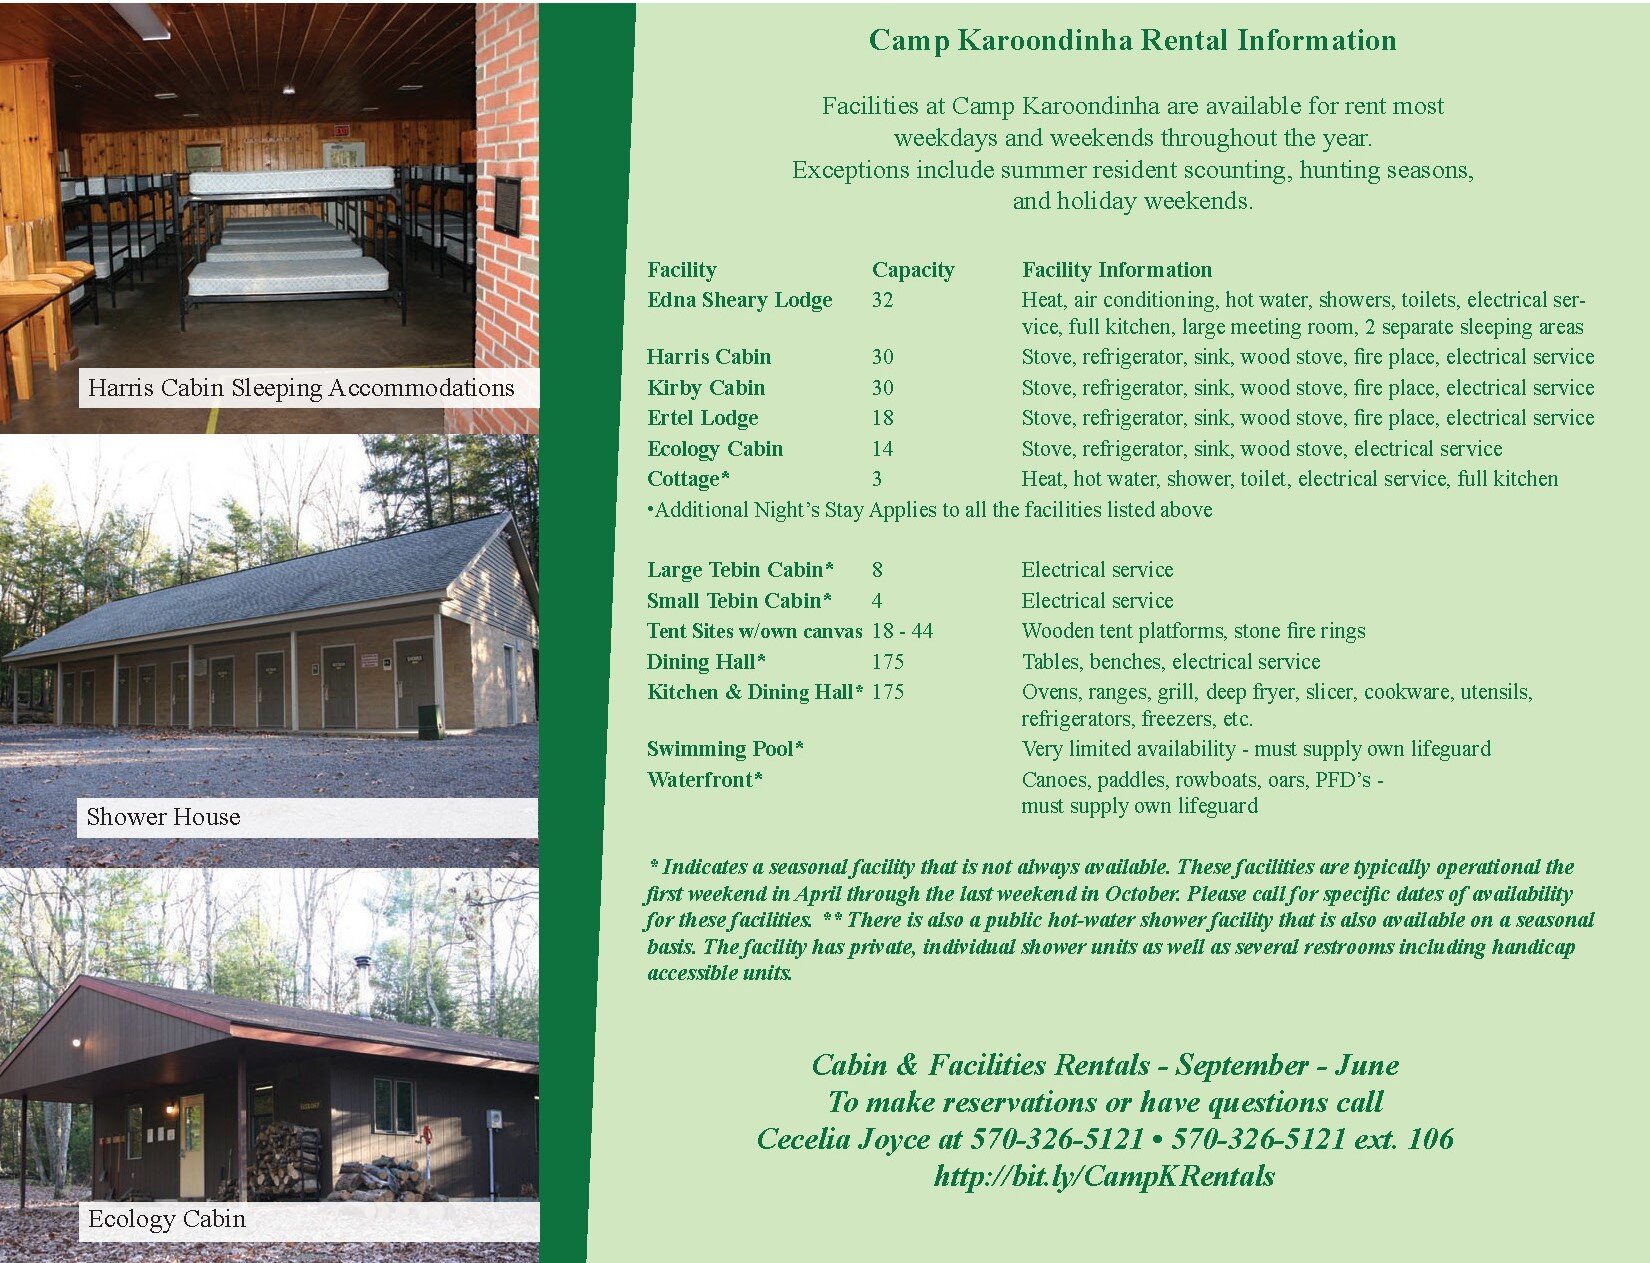 Camp K Rental Brochure v1 3.7.17_Page_2.jpg